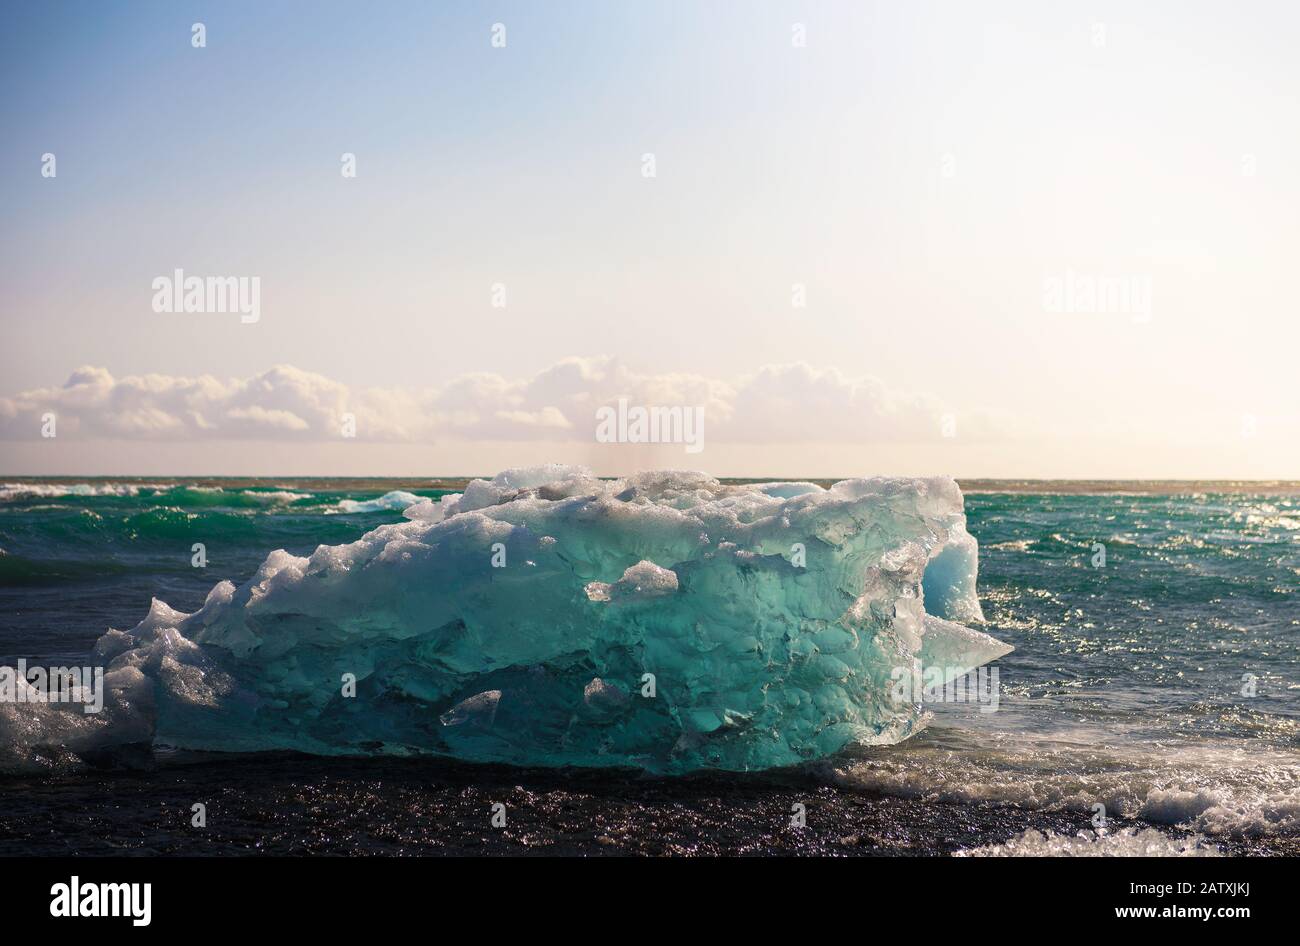 Iceberg lying on the Diamond Beach in Jokulsarlon Glacier Lagoon, Iceland Stock Photo